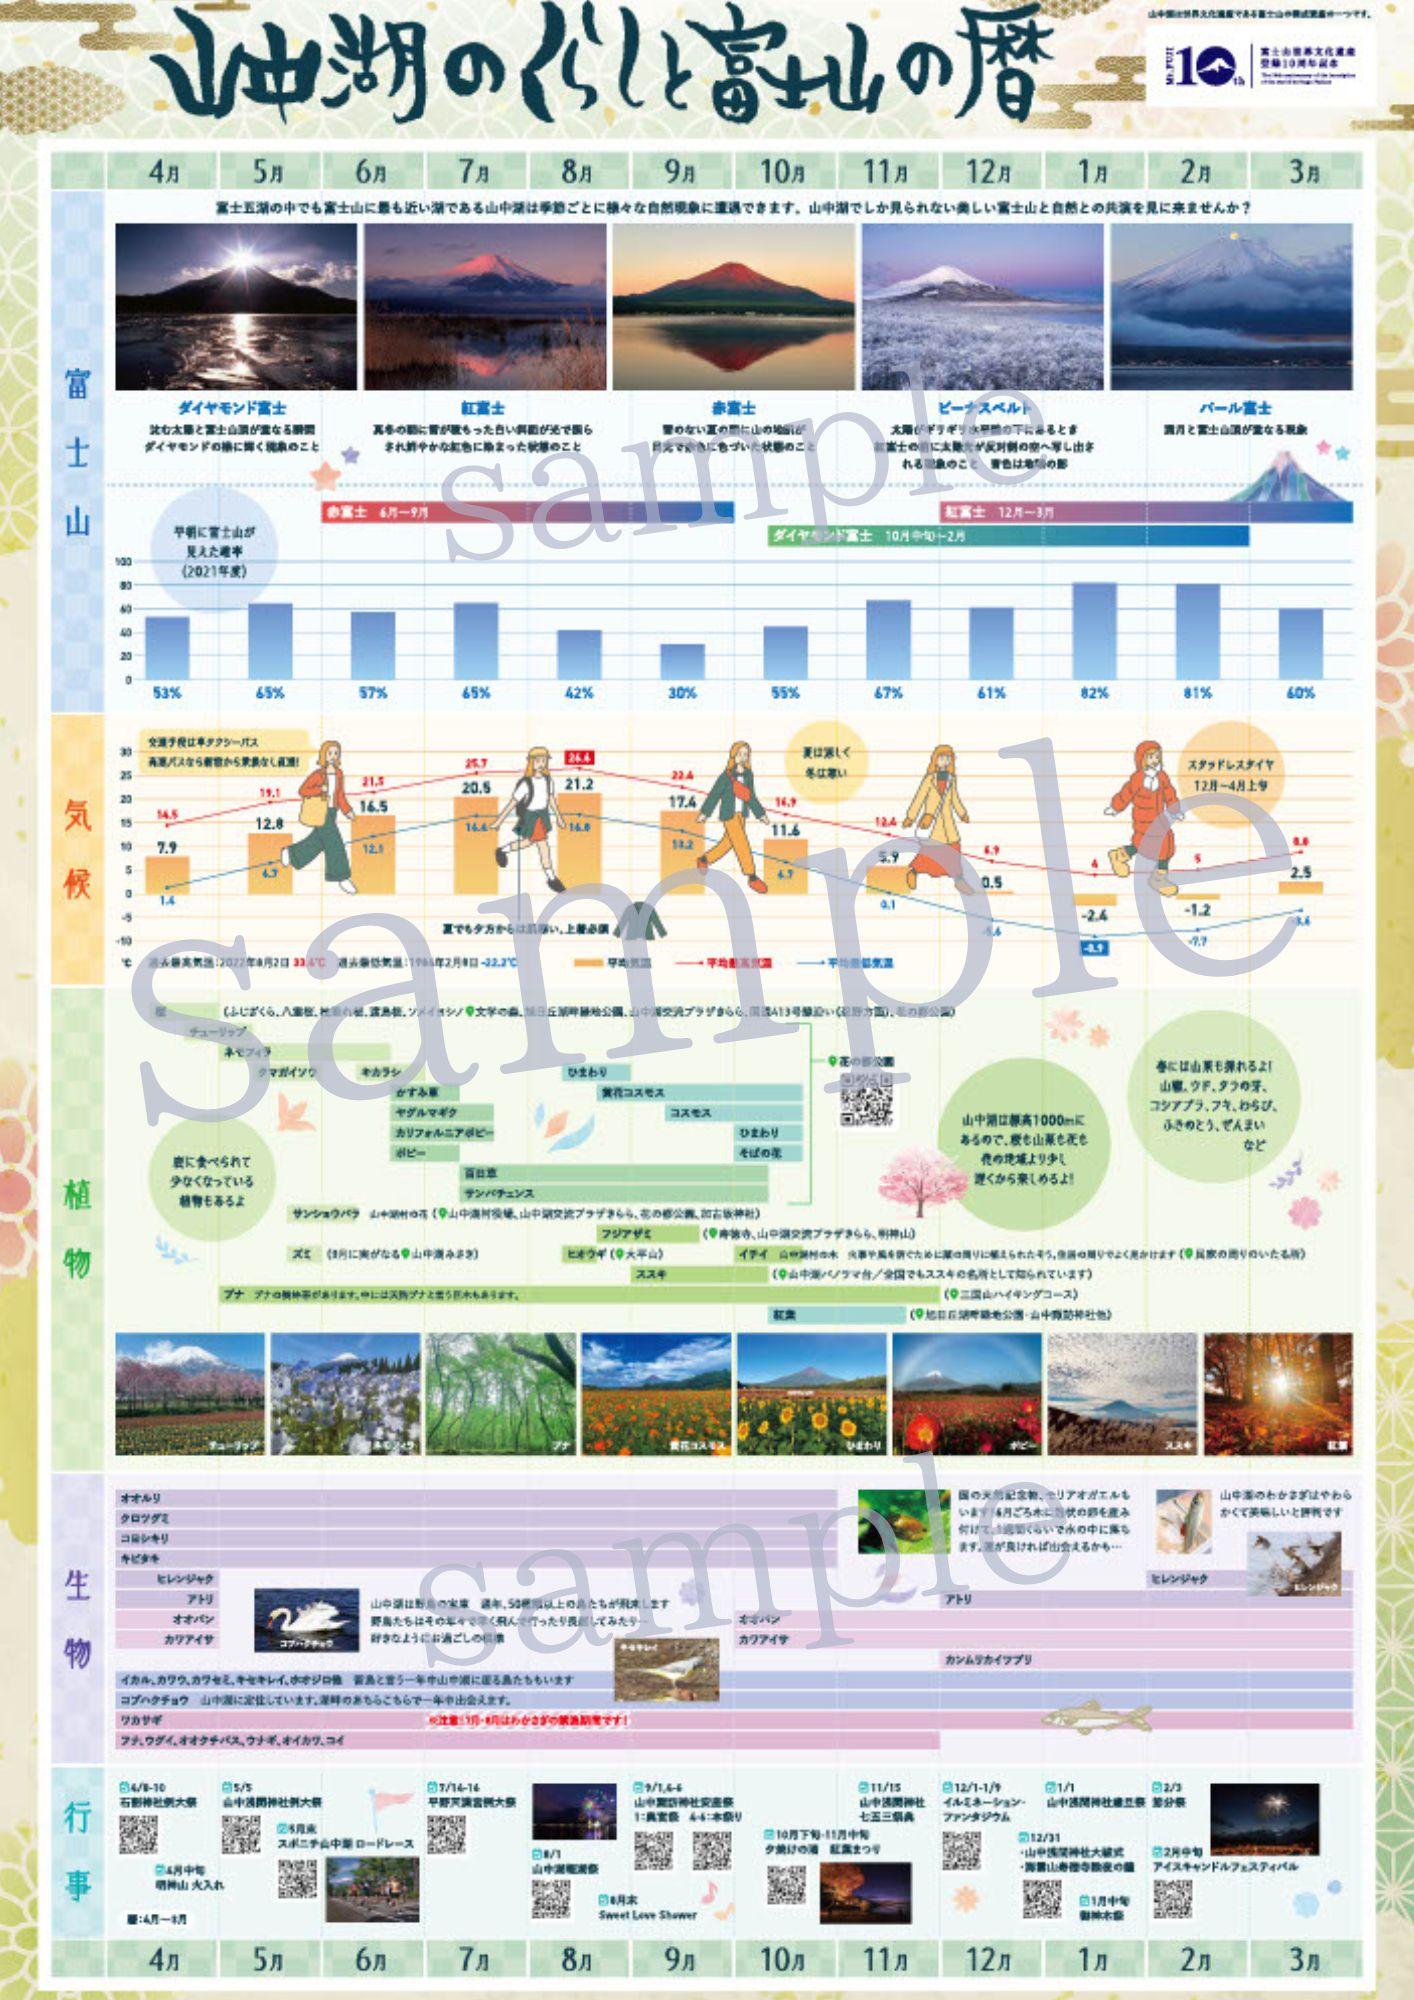 フェノロジーカレンダー『山中湖のくらしと富士山の暦』販売のお知らせ-1